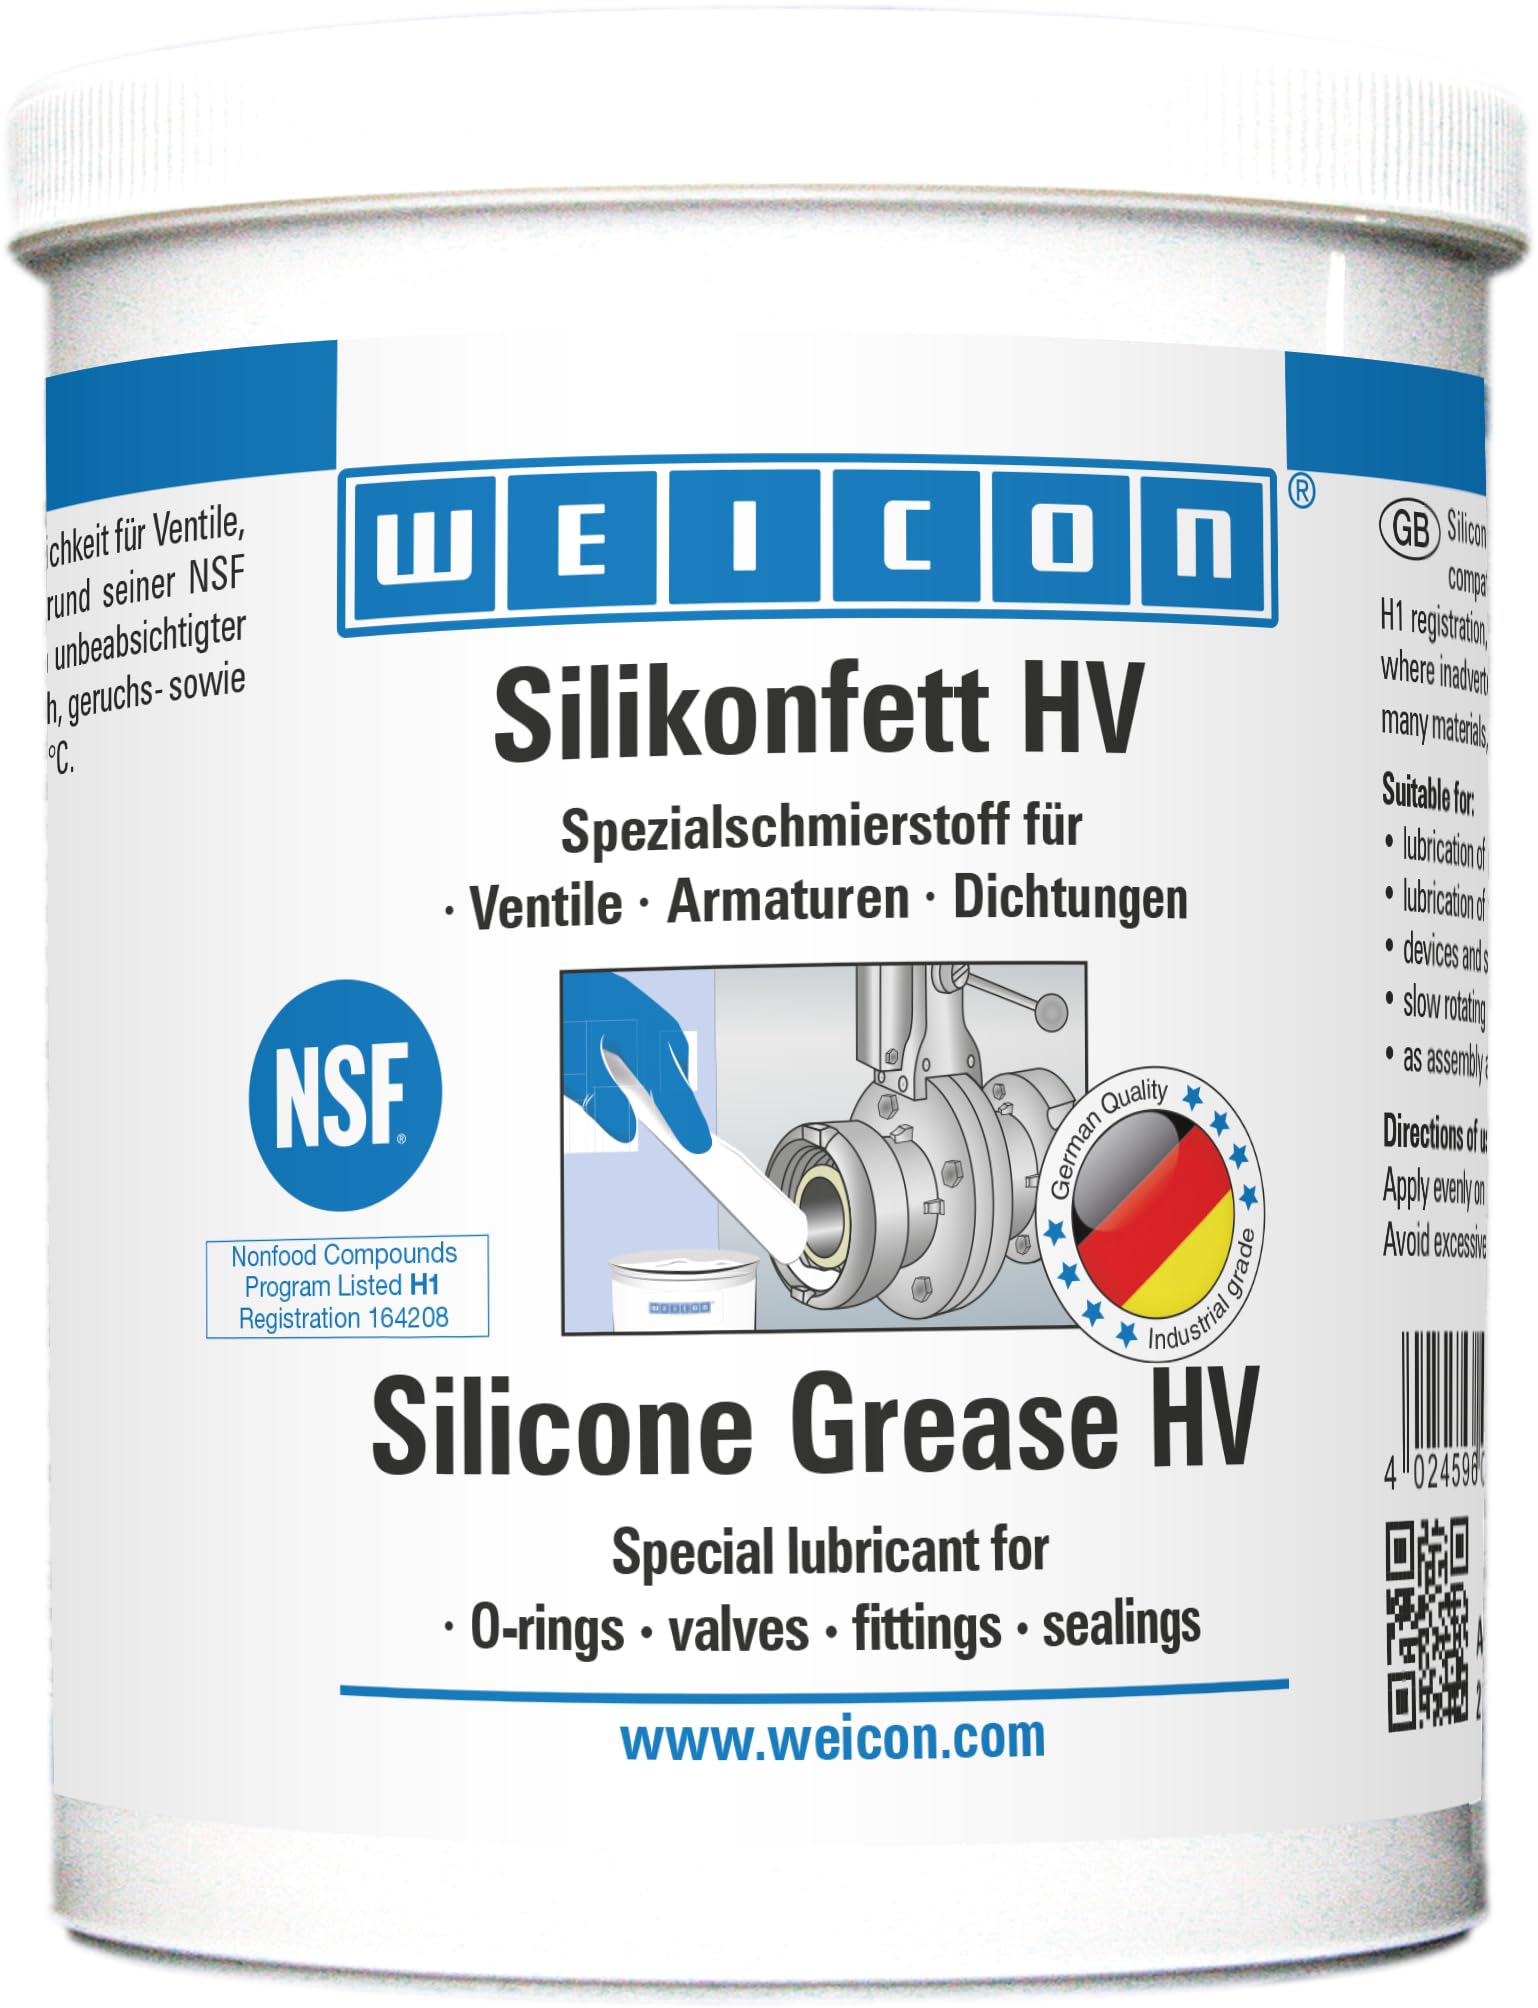 WEICON Silikonfett HV 450g, Silikonfett lebensmittelecht für Ventile, Armaturen & Dichtungen, Schmierfett transparent von WEICON